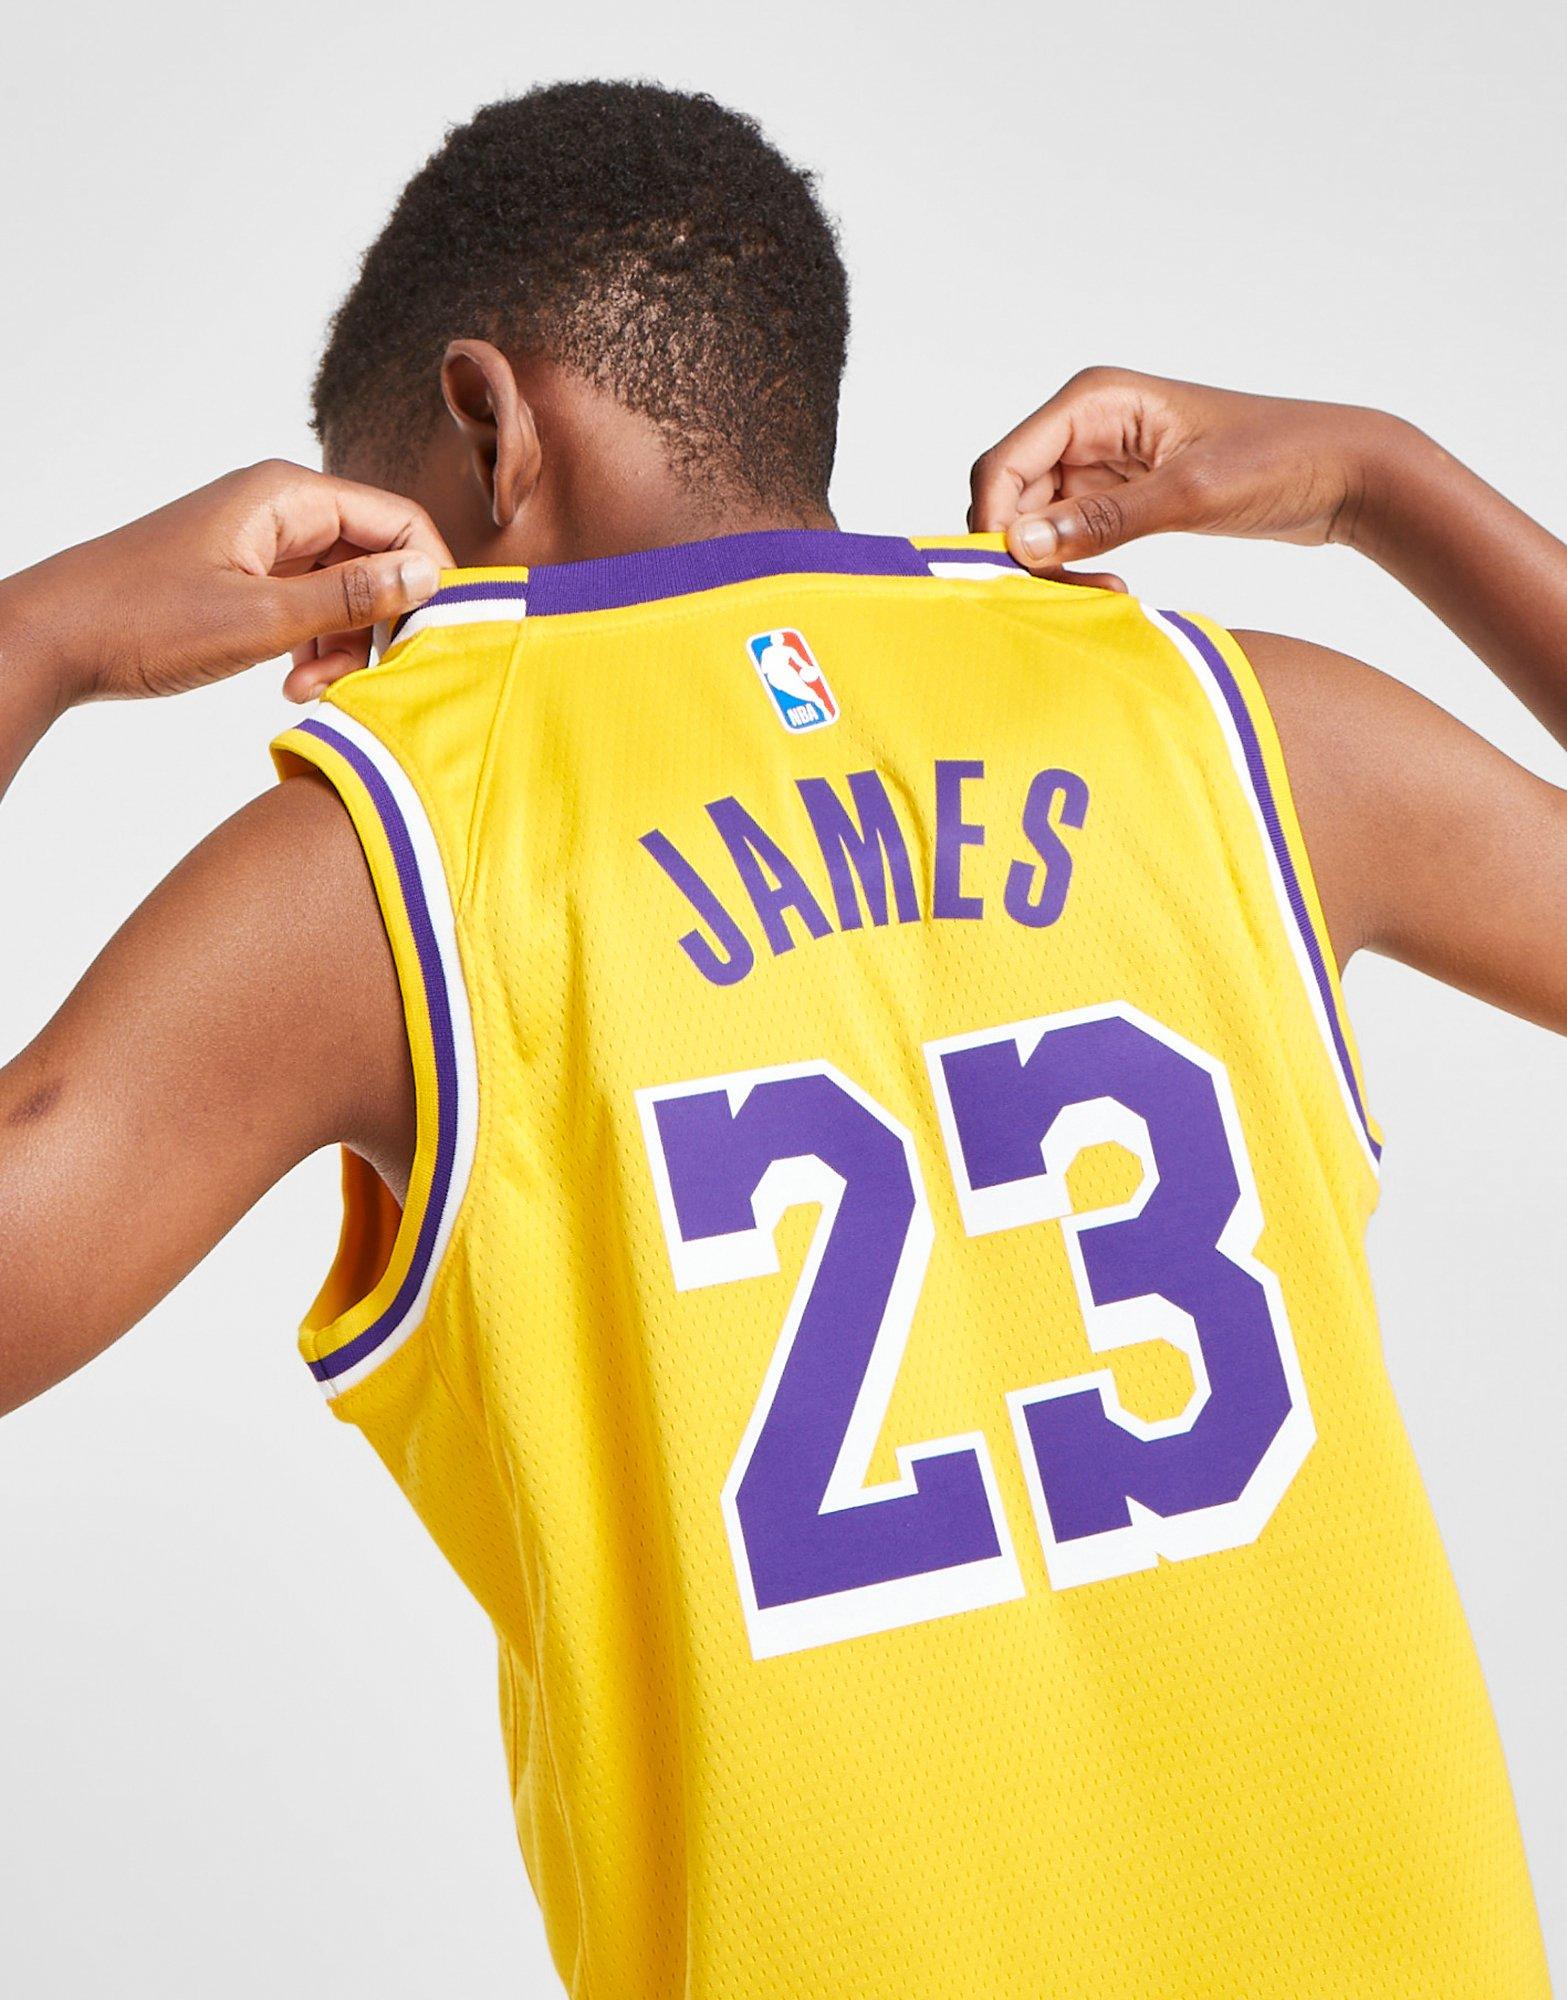 Sebneei Nba James Basketball Jersey No. 23 / Lakers Jersey Set Kids Adults Yellow L